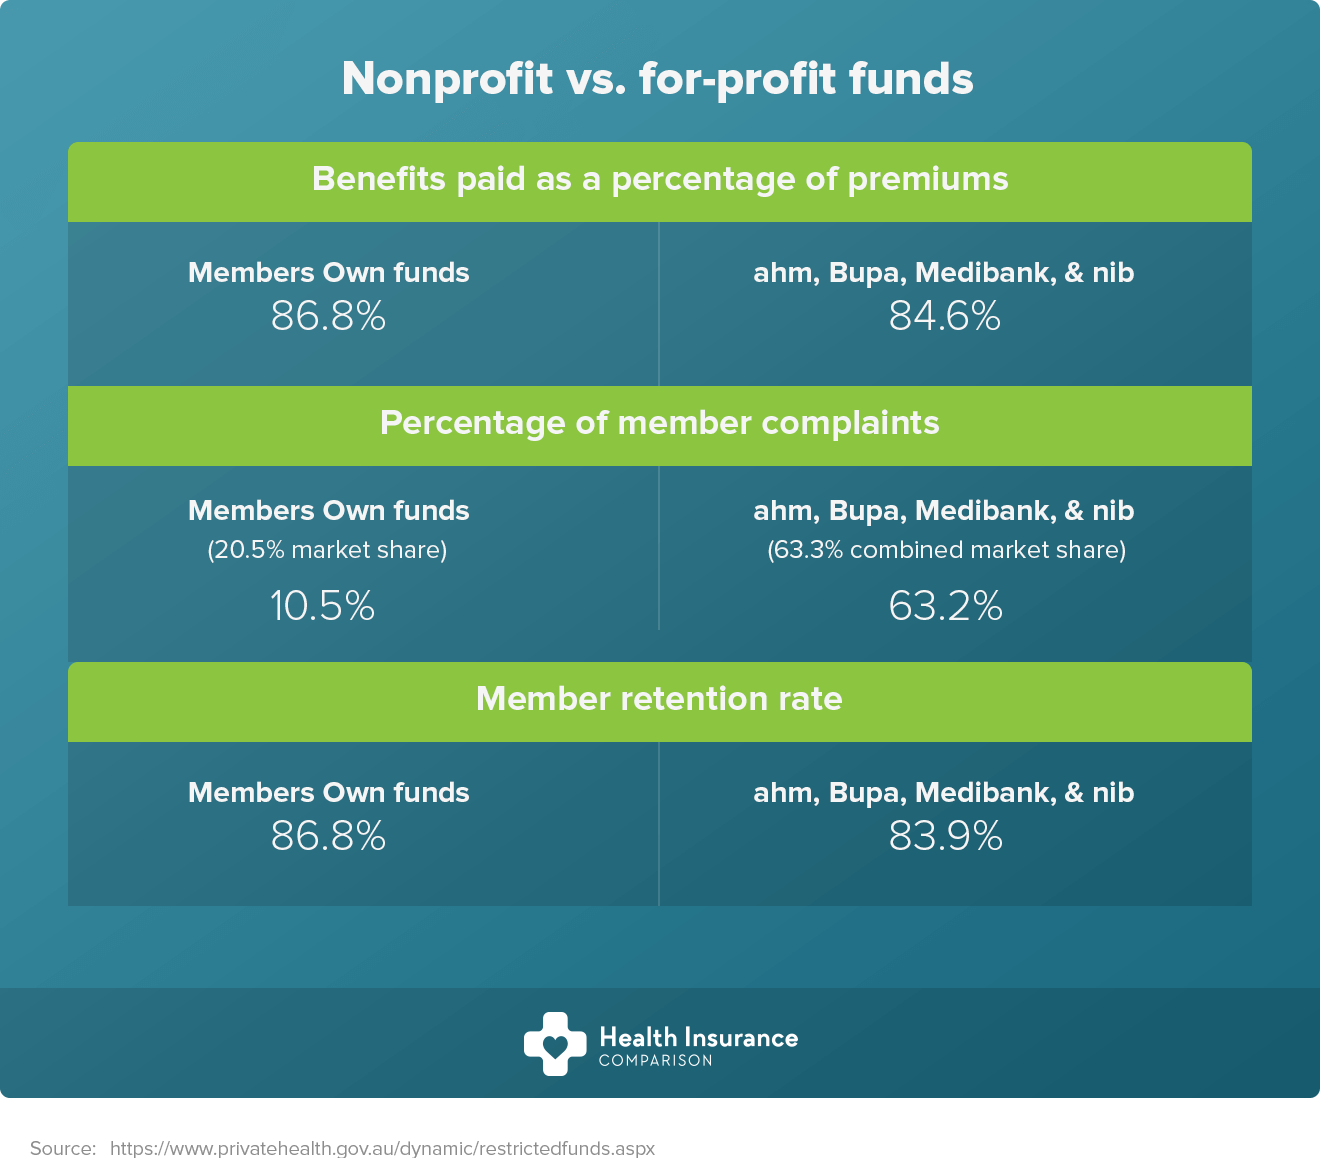 Non profit vs for profit health funds in Australia